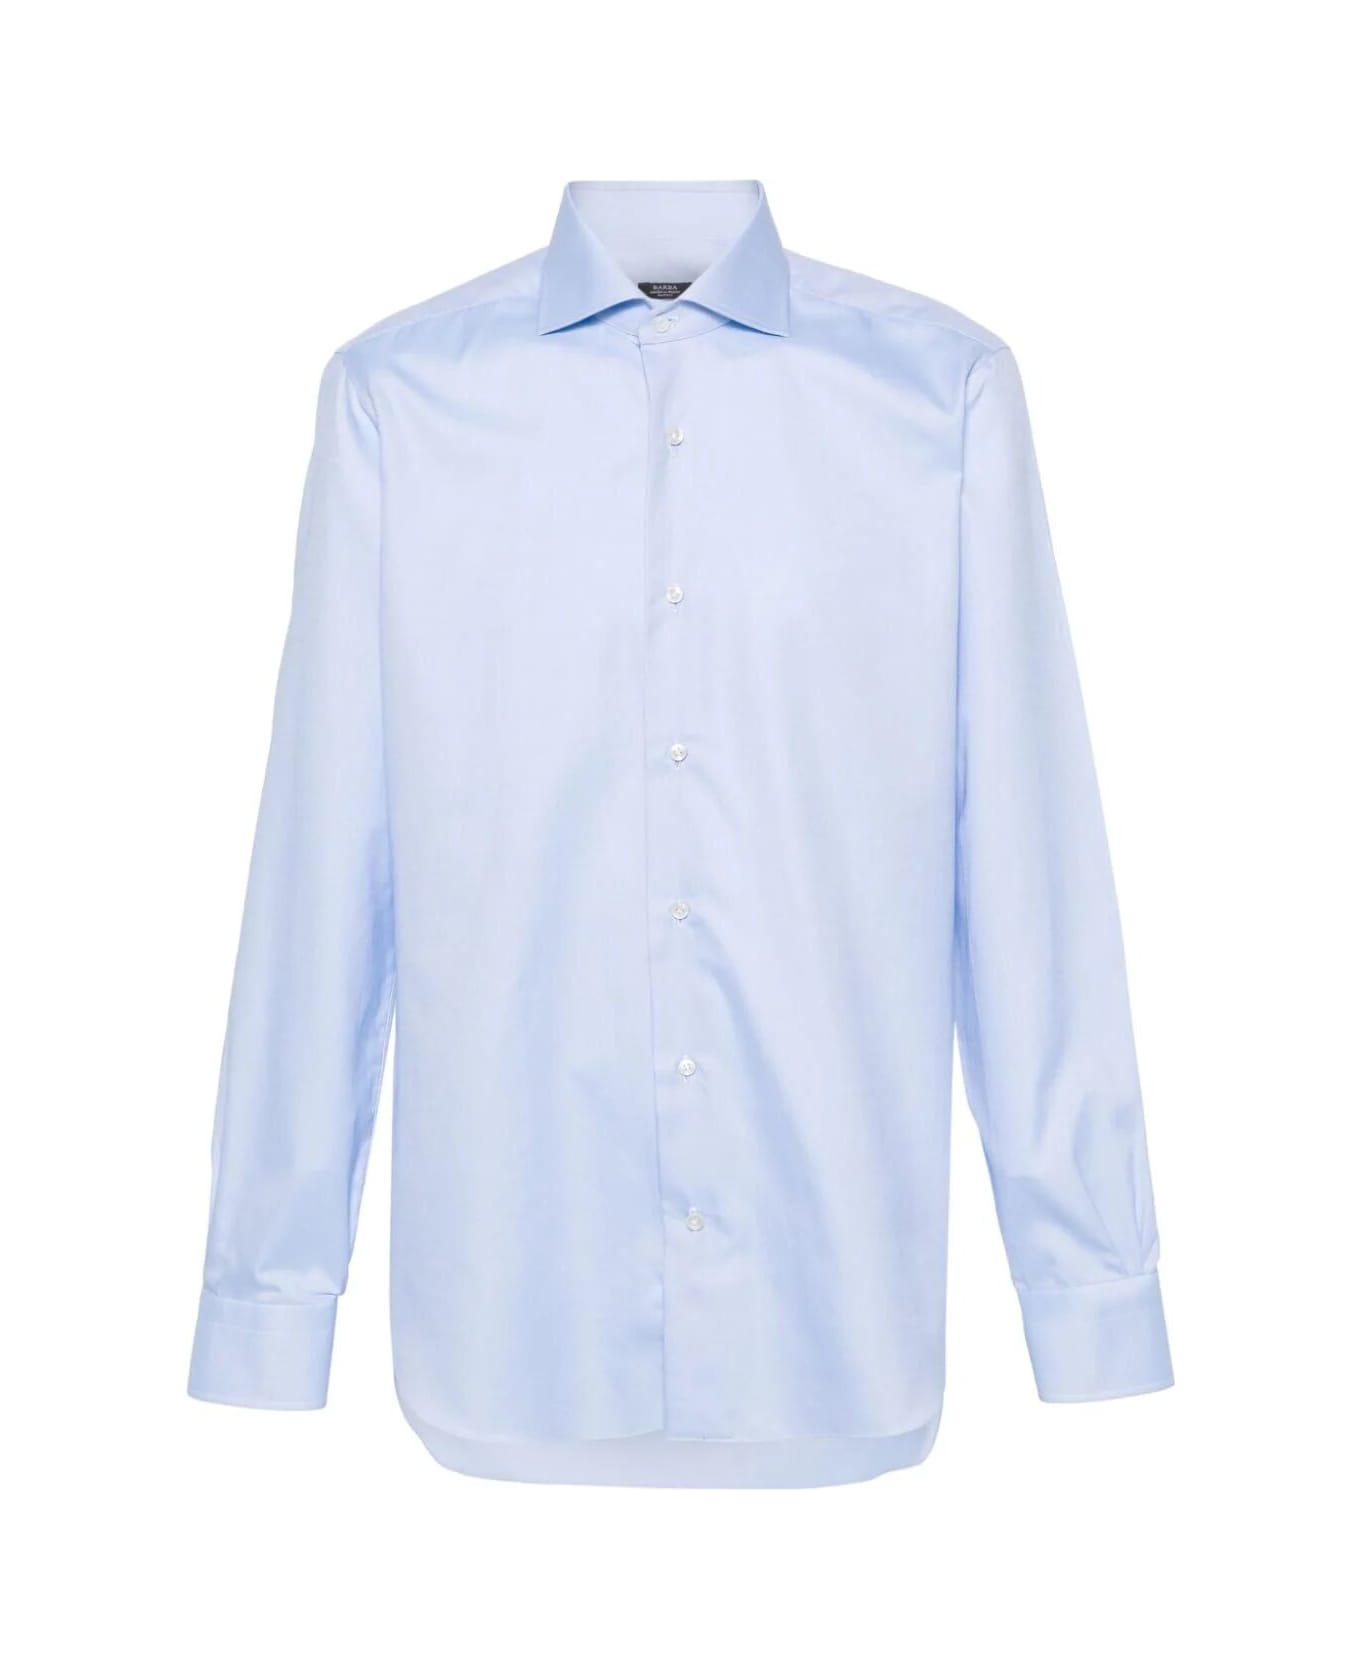 Barba Napoli Neck Shirt - White Blue シャツ